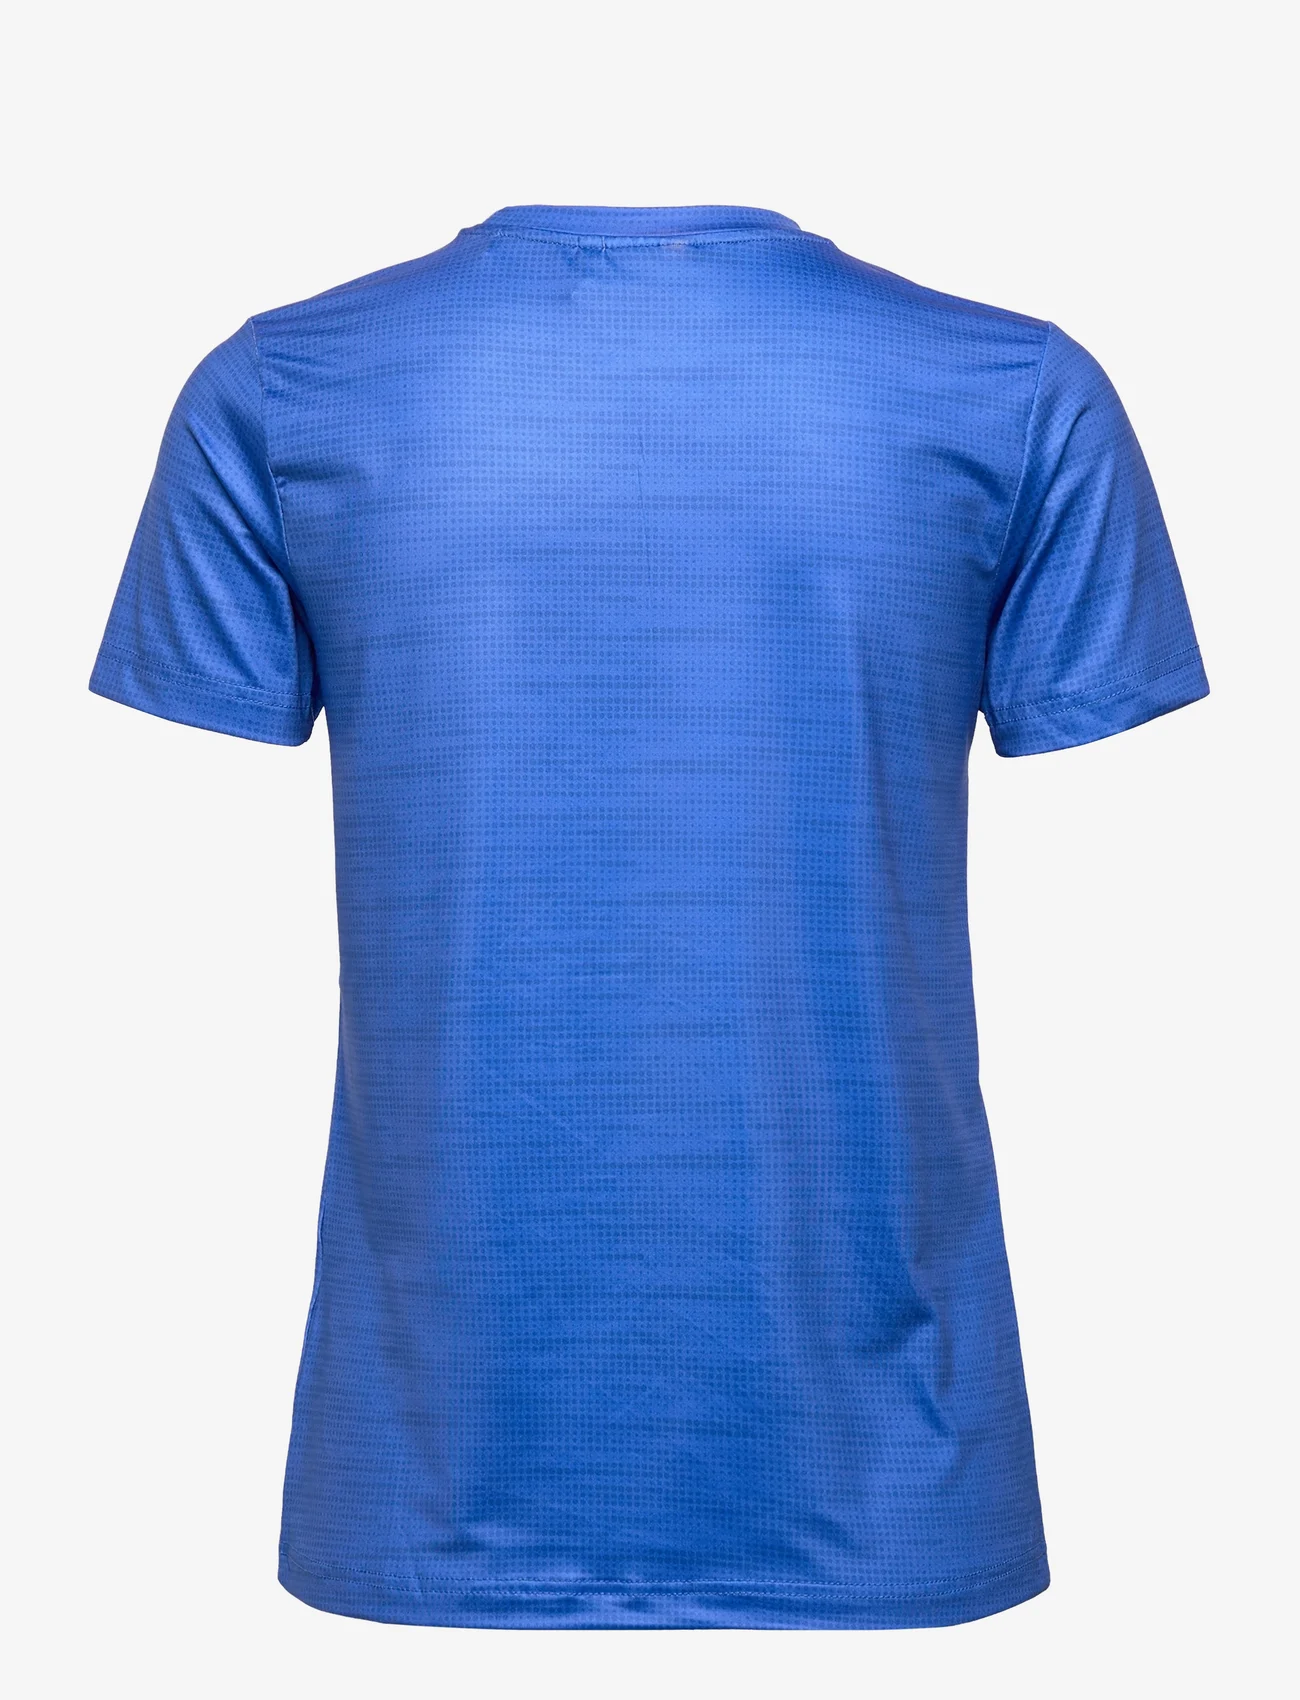 Zerv - ZERV Sydney T-Shirt Women's - t-shirts - blue - 1